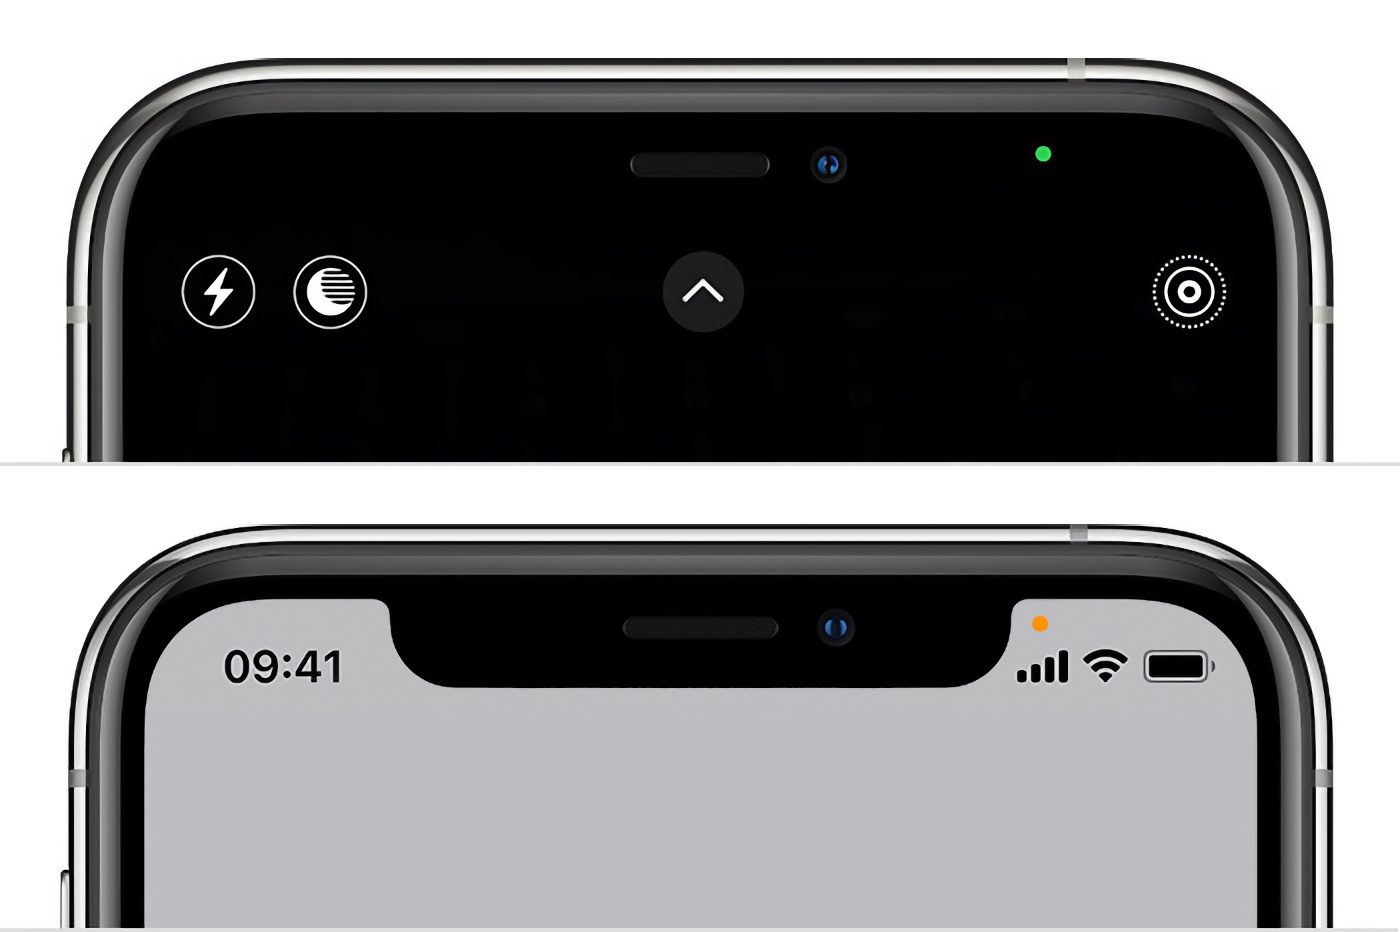 Apa titik hijau (atau oranye) di atas iPhone?